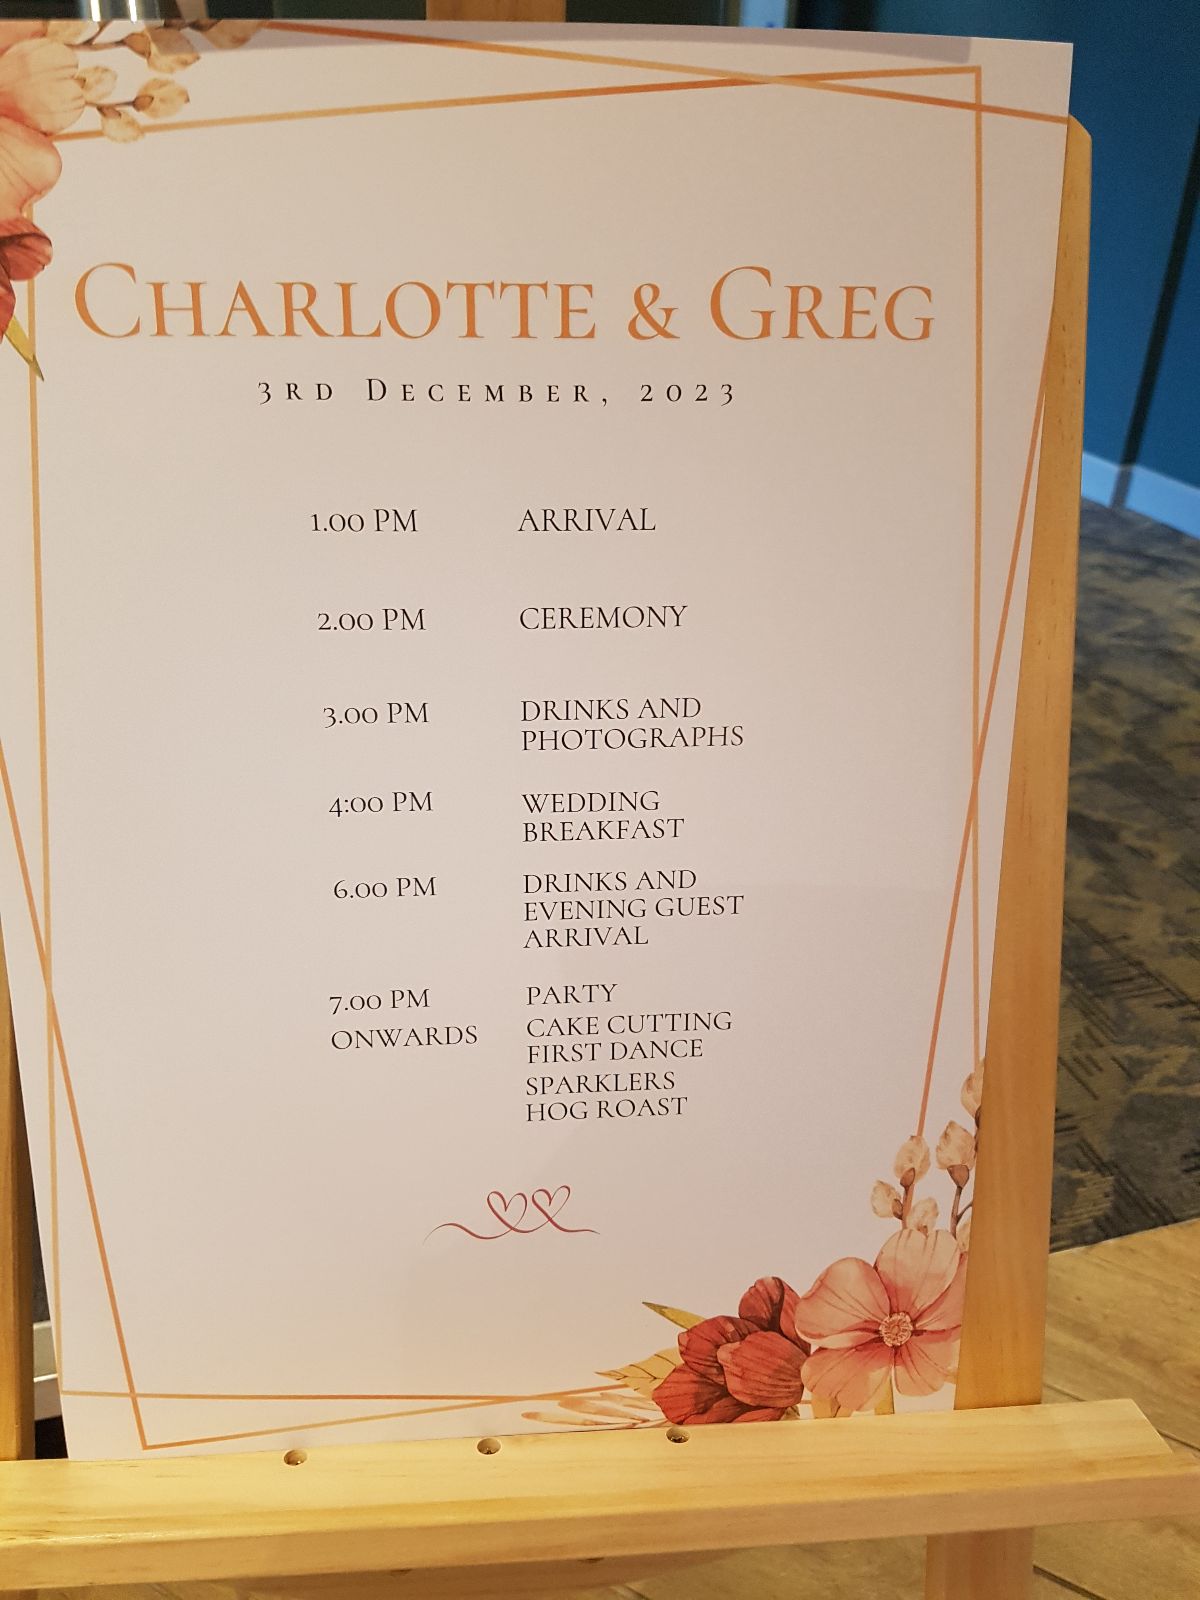 Real Wedding Image for Charlotte & Greg